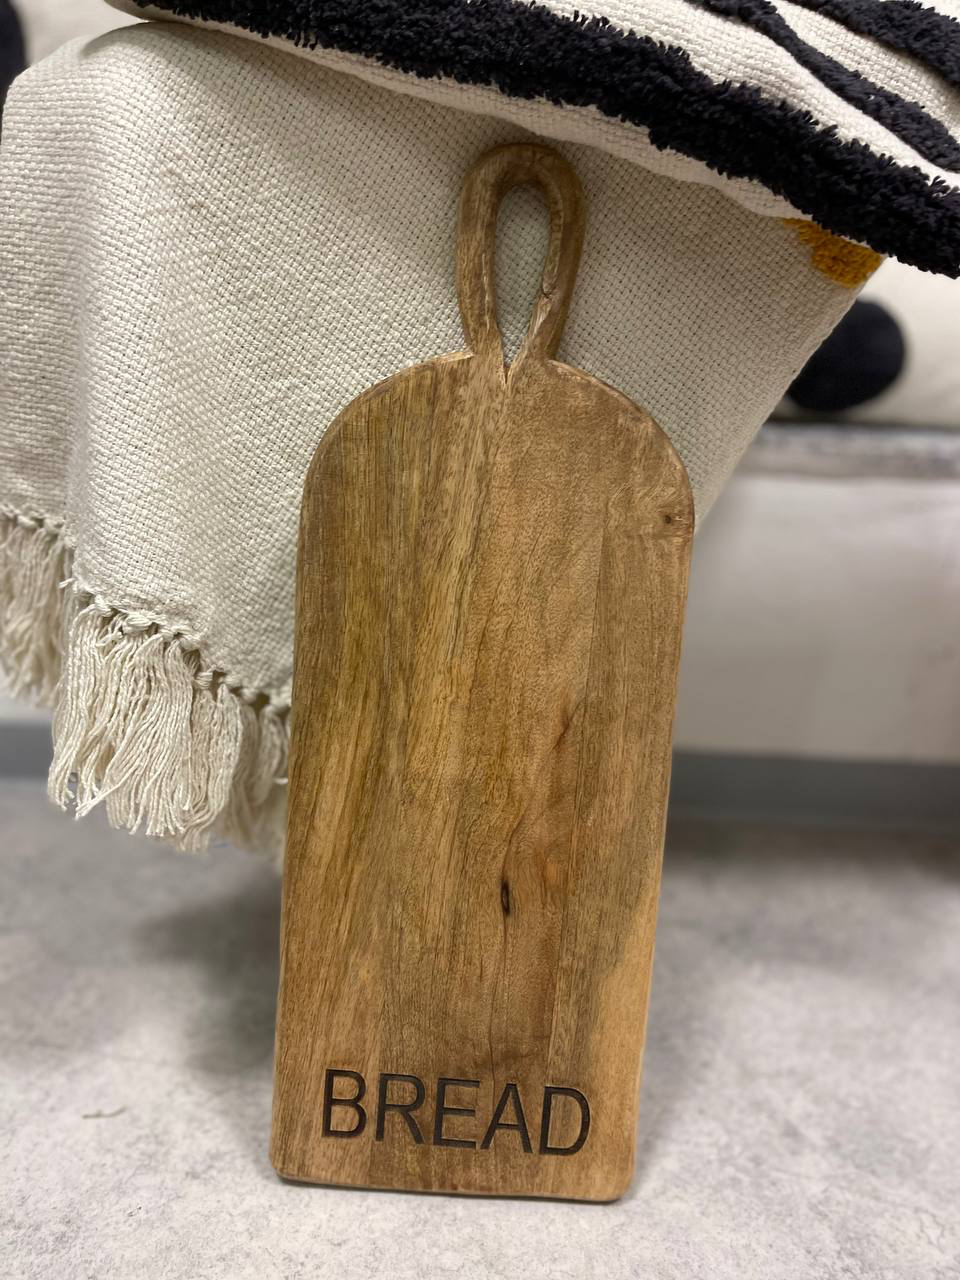 Holzbrett (Bread)